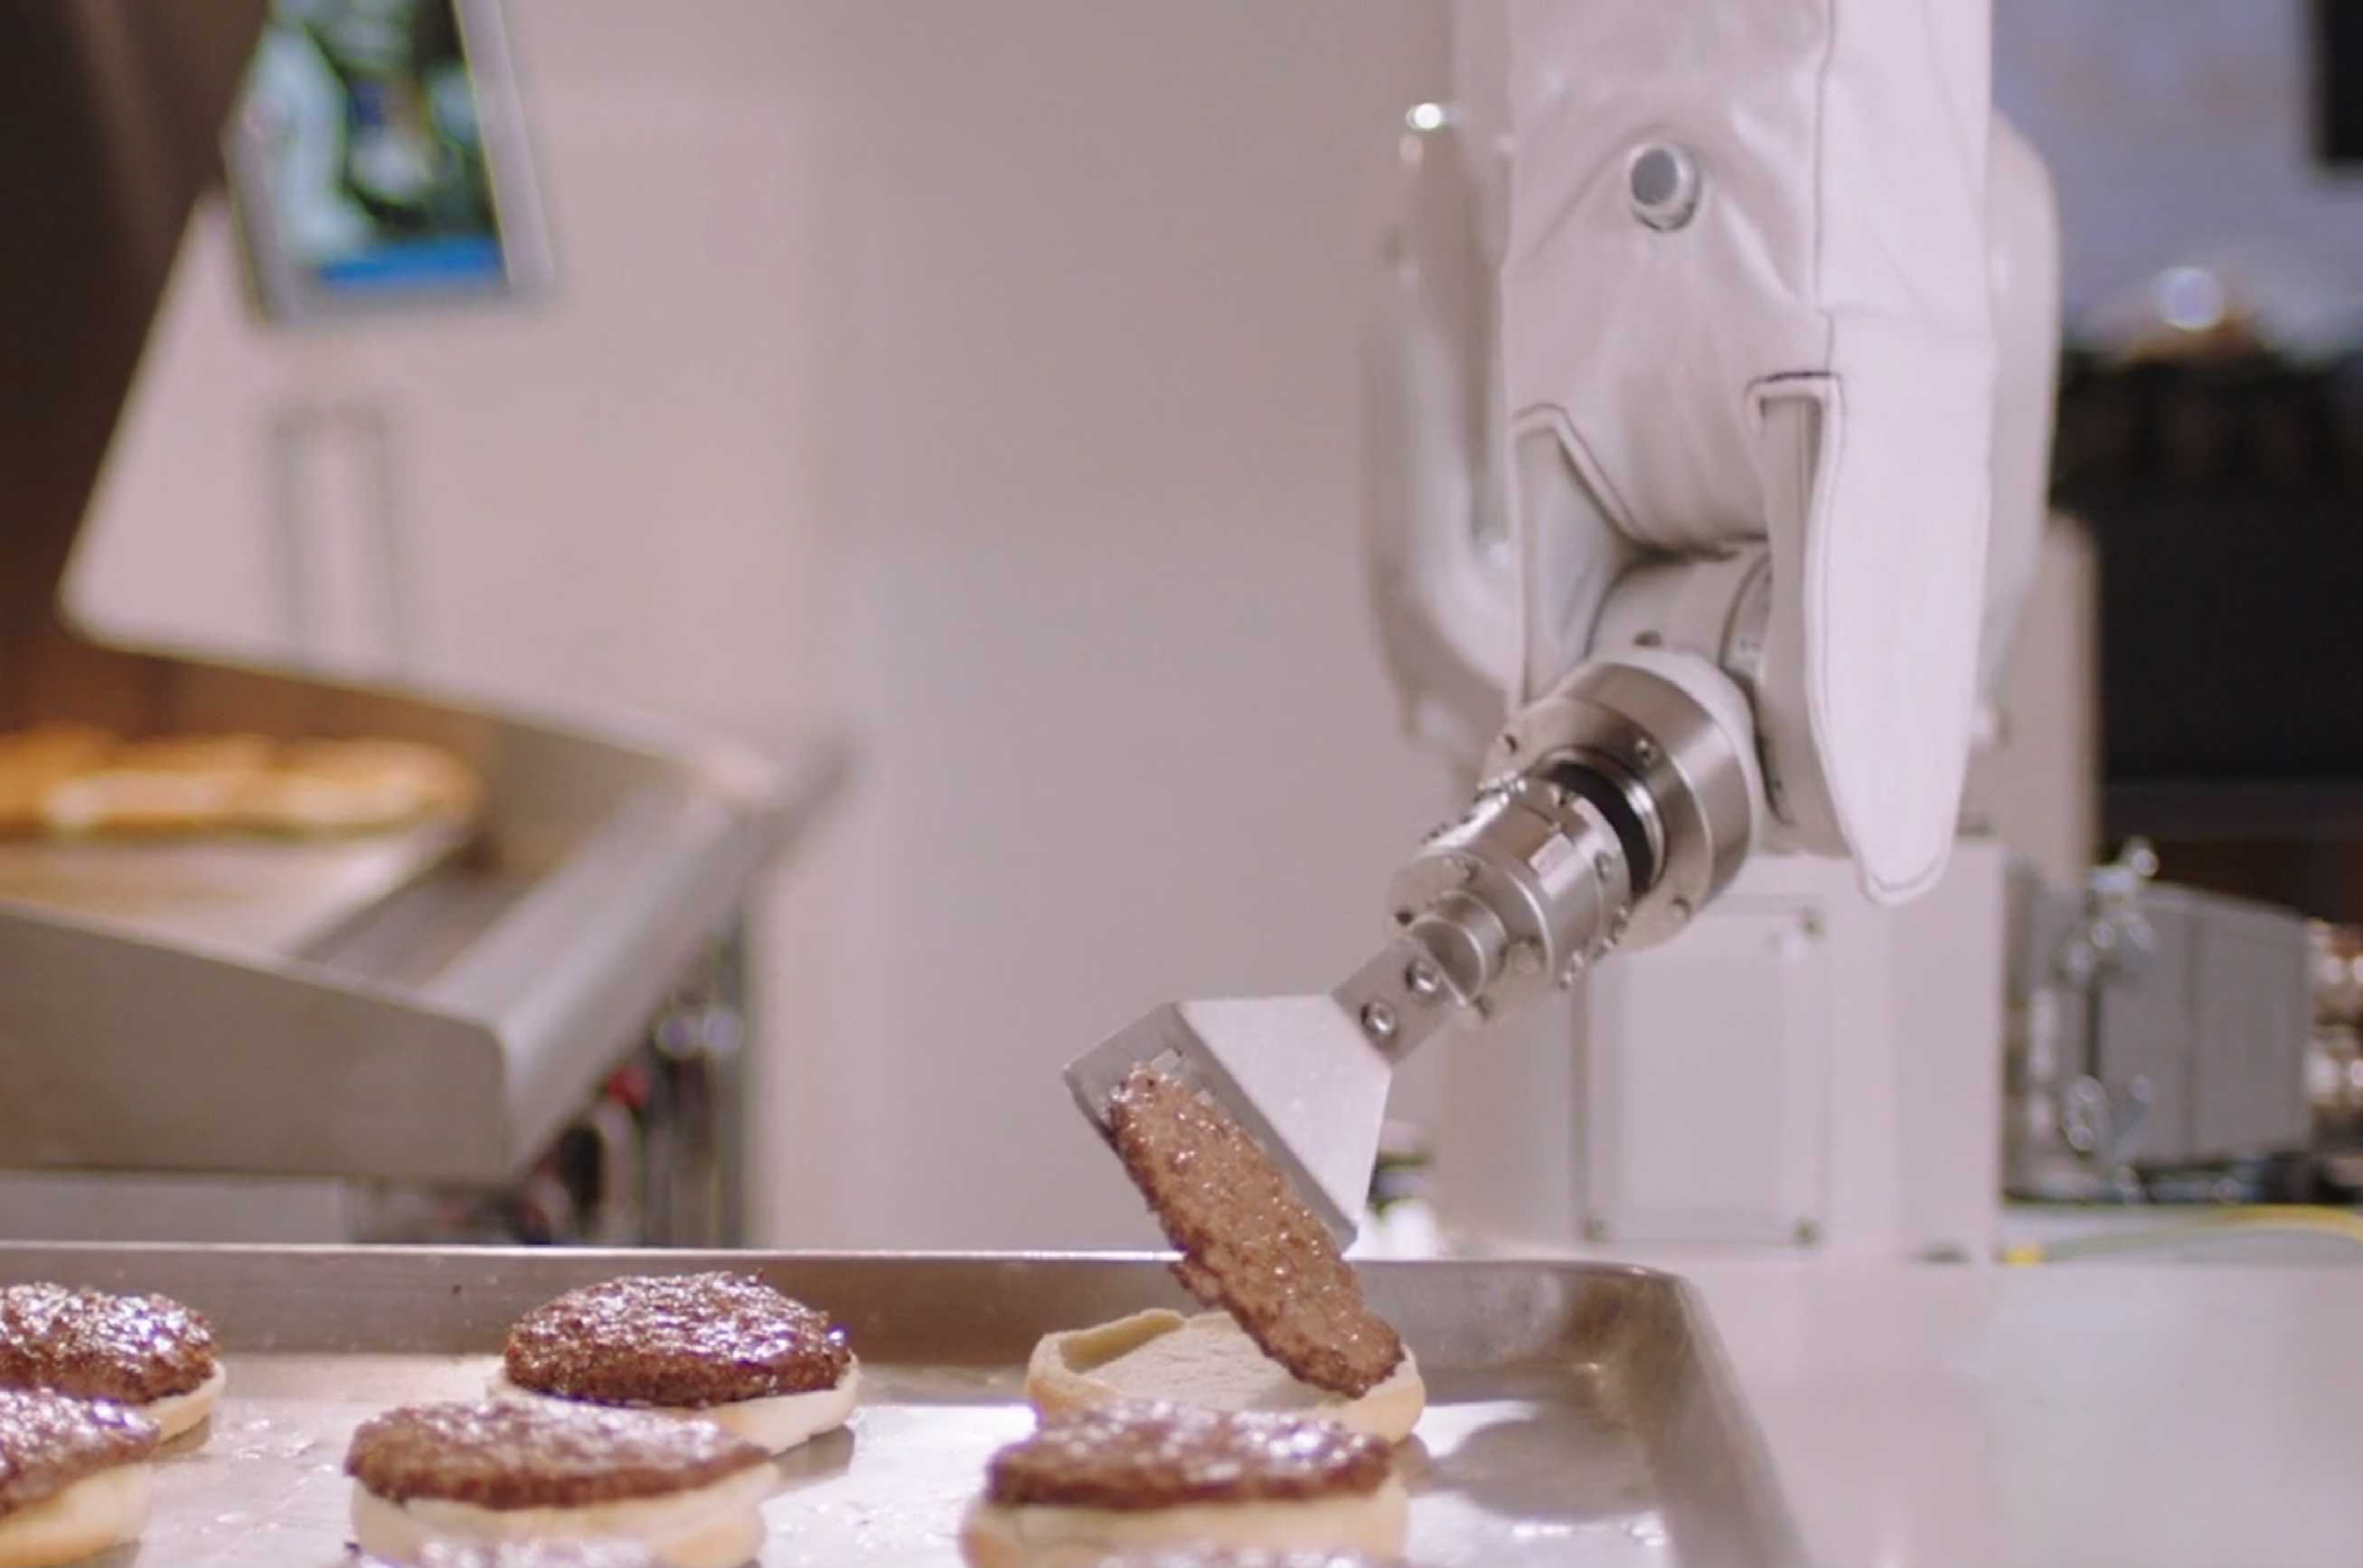 robots in kitchen - restroapp-compressed